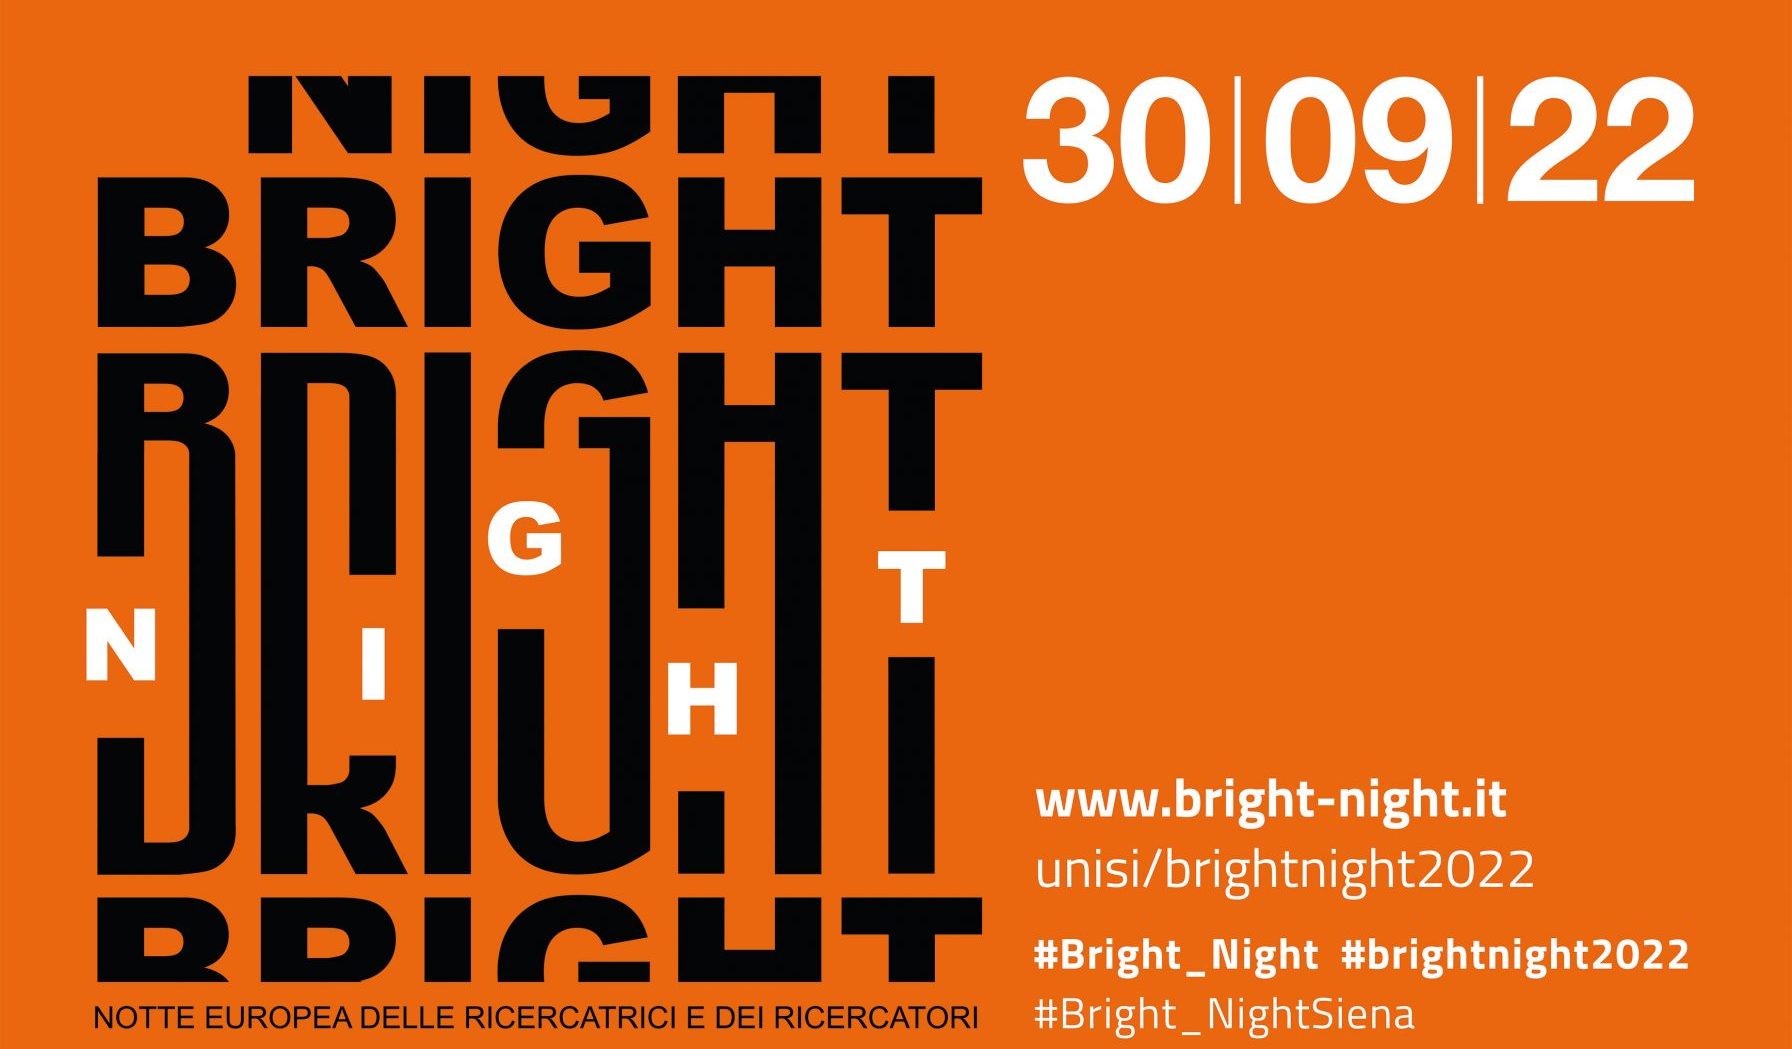 Bright-Night 2022: dall'astronauta Franco Malerba sulla New Space Economy alla sostenibilità ambientale